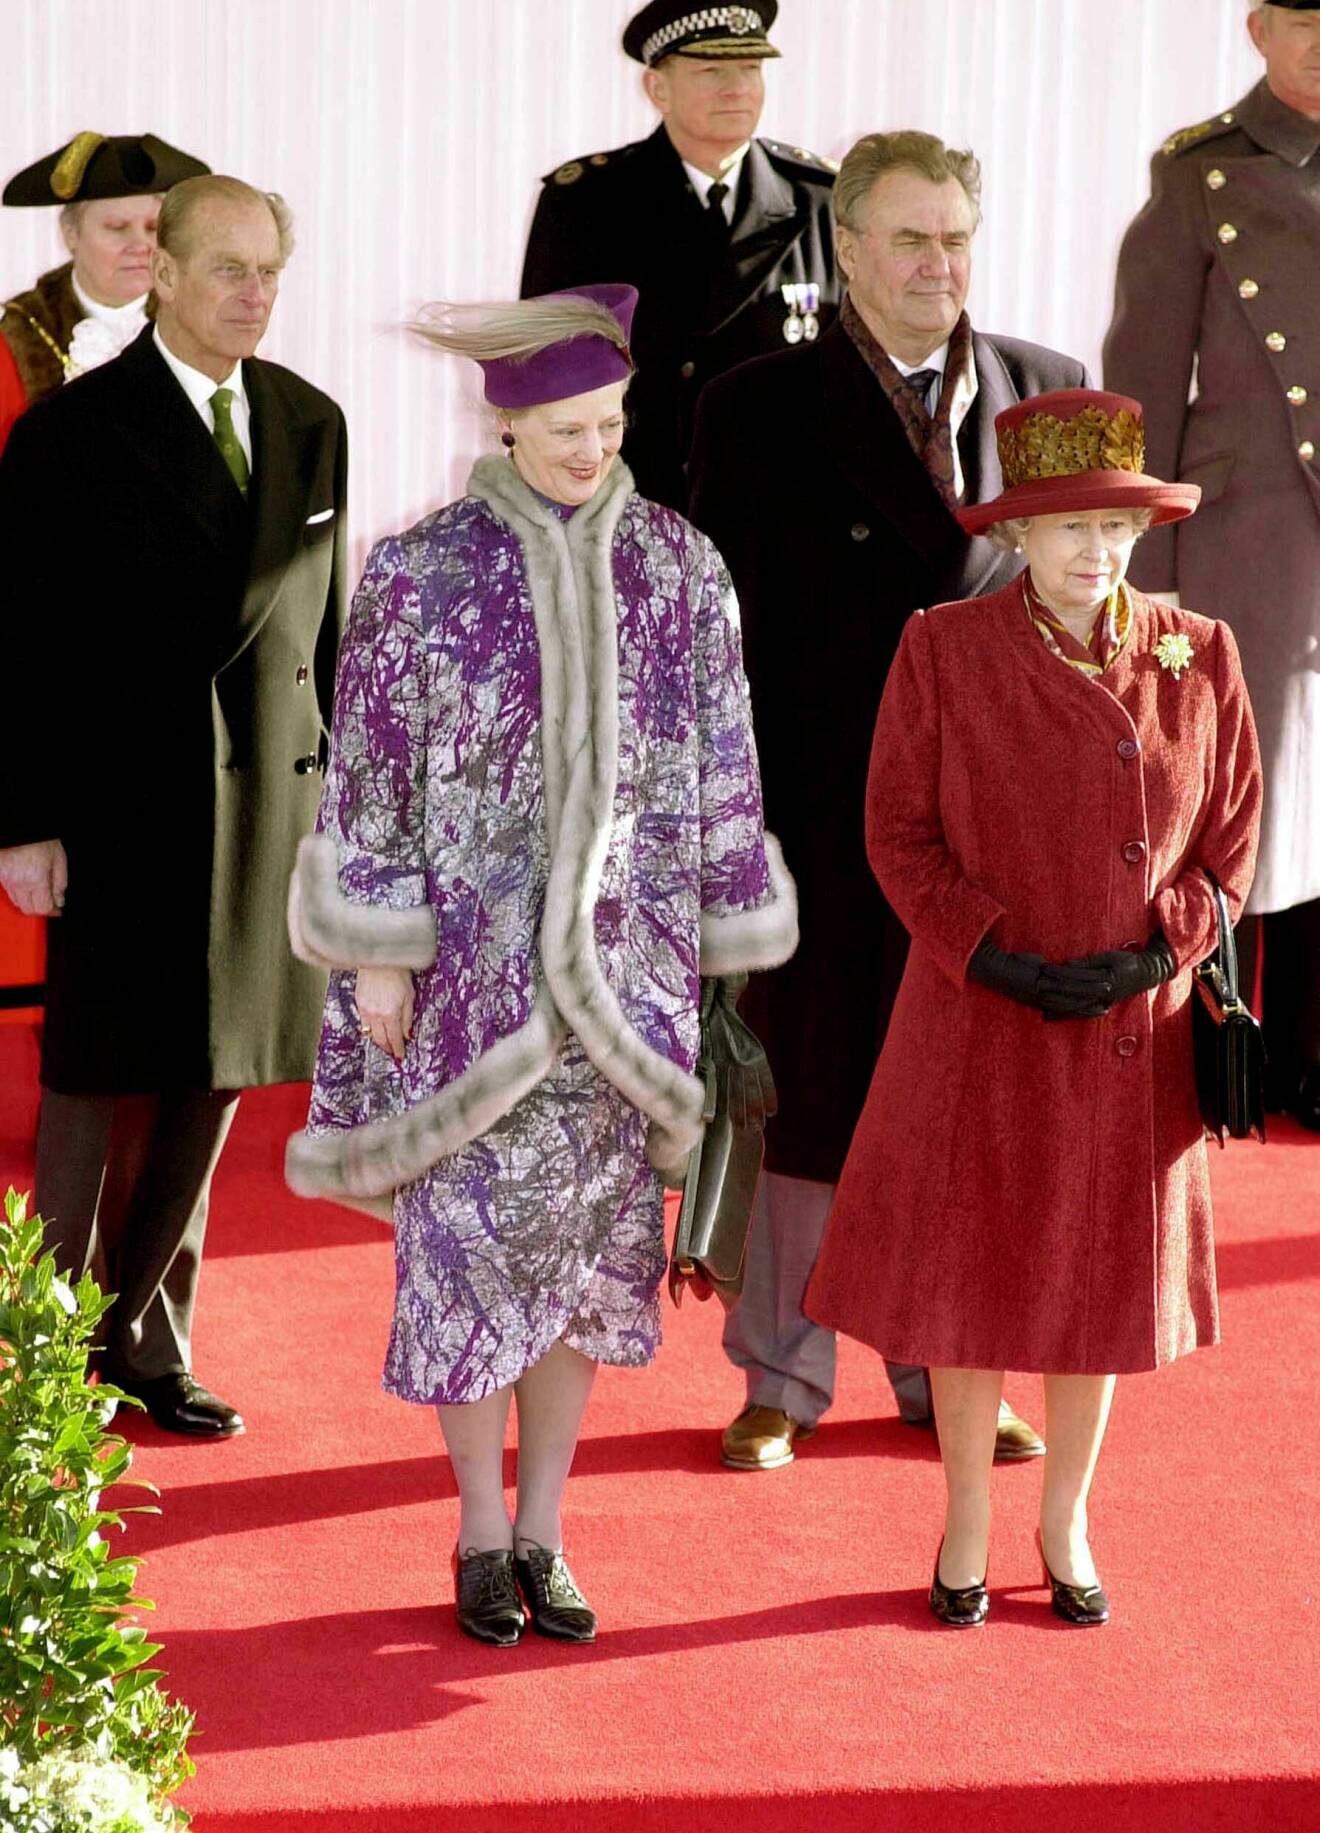 Drottning Margrete II och drottning Elizabeth